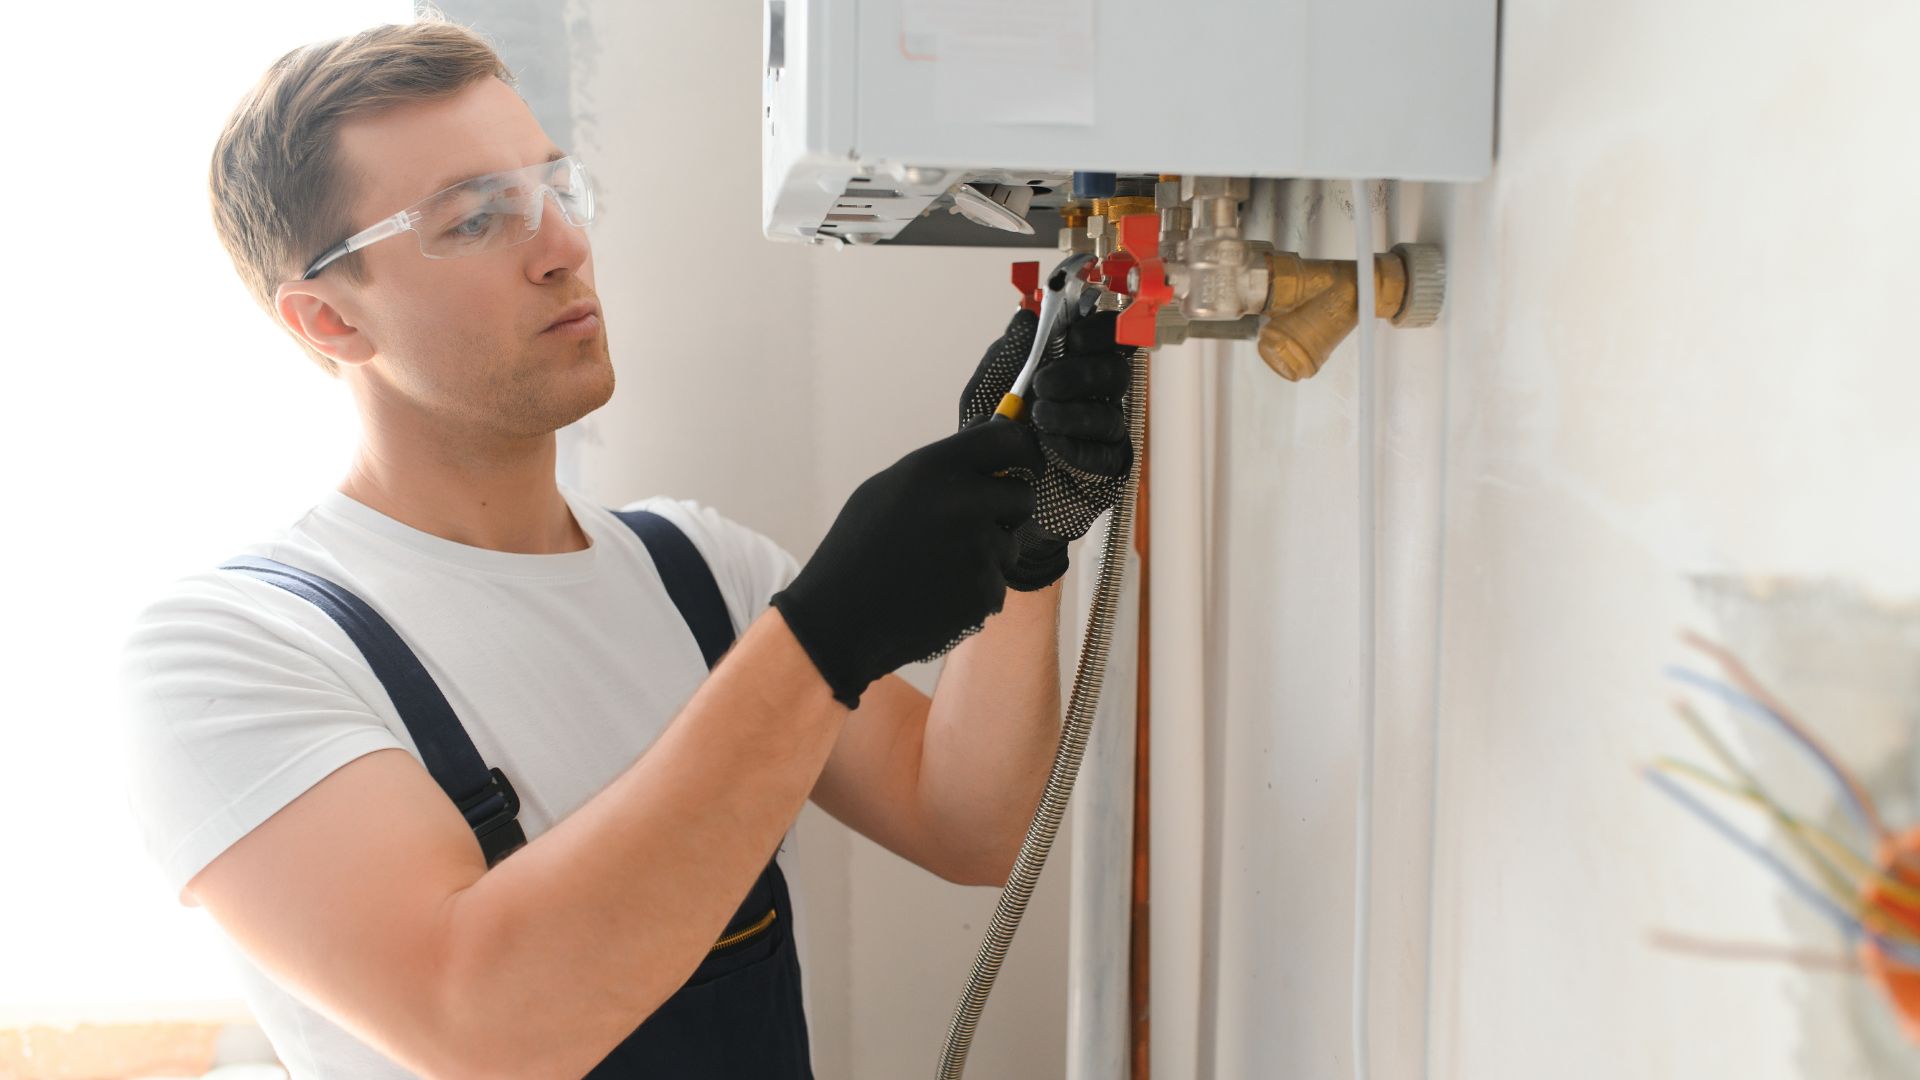 Repair of boilers conducted by skilled plumbers.